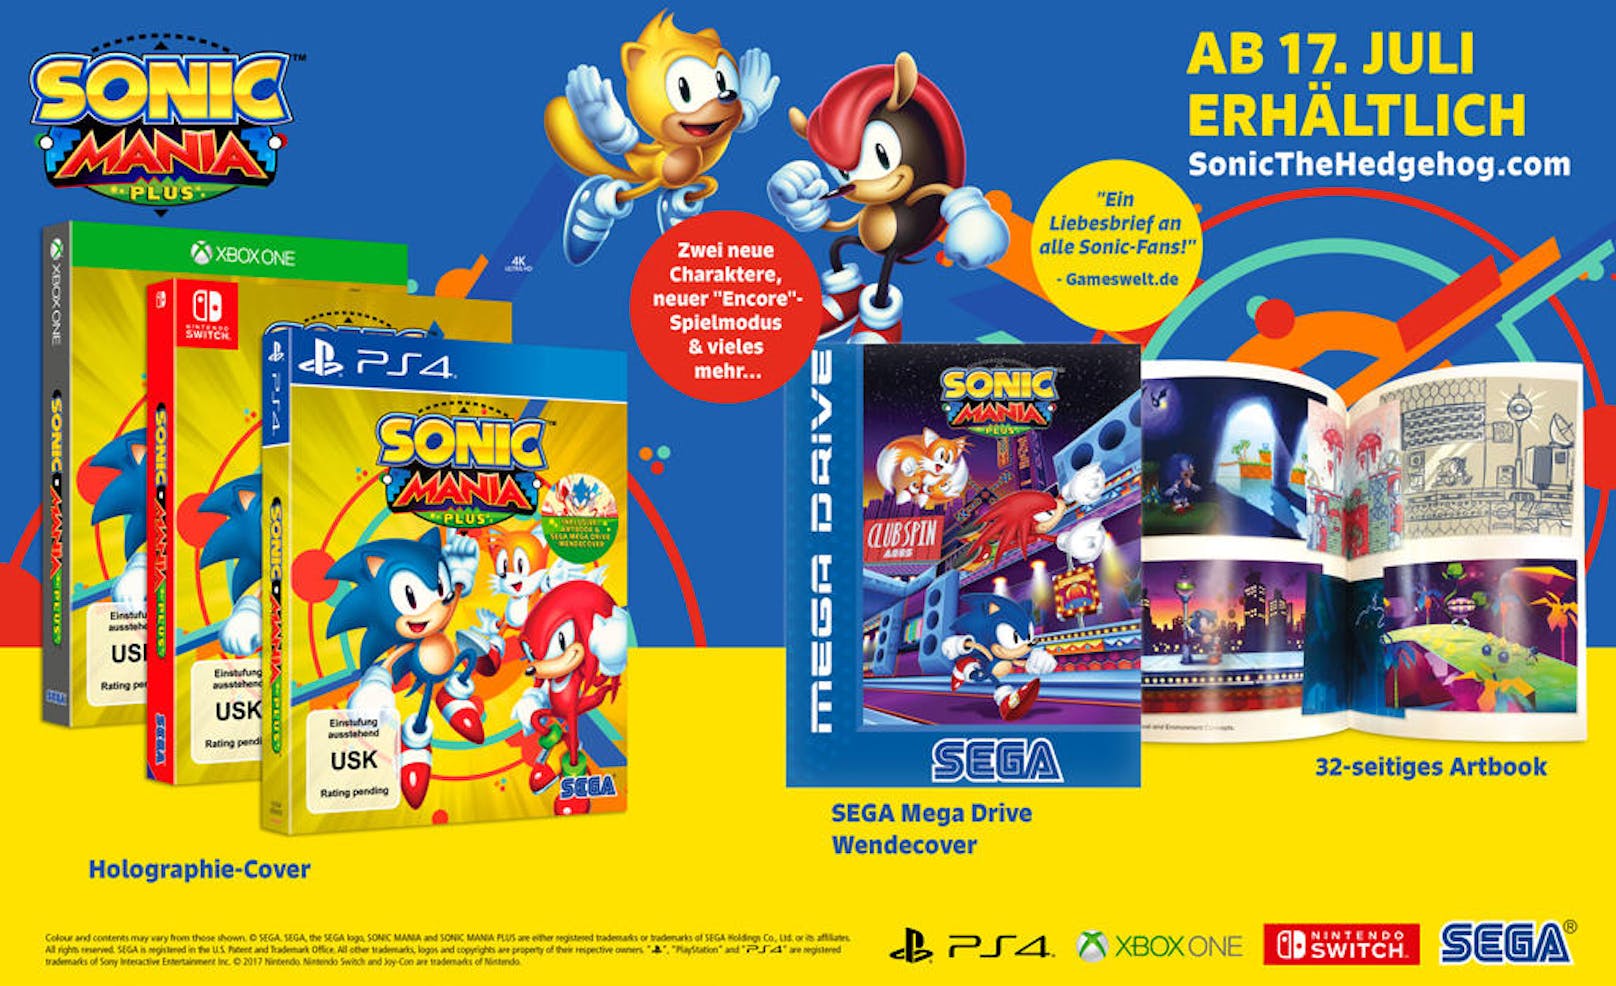 Aufruf an alle Sonic-Fans! Sega gibt heute bekannt, dass Sonic Mania Plus, die ultimative Version des von Kritikern gefeierten Plattformers Sonic Mania, am 17. Juli 2018 in Nord-Amerika und Europa für PlayStation 4, Xbox One und Switch im Handel erscheint. Sonic-Fans können das Spiel ab sofort bei allen teilnehmenden Einzelhändlern vorbestellen.